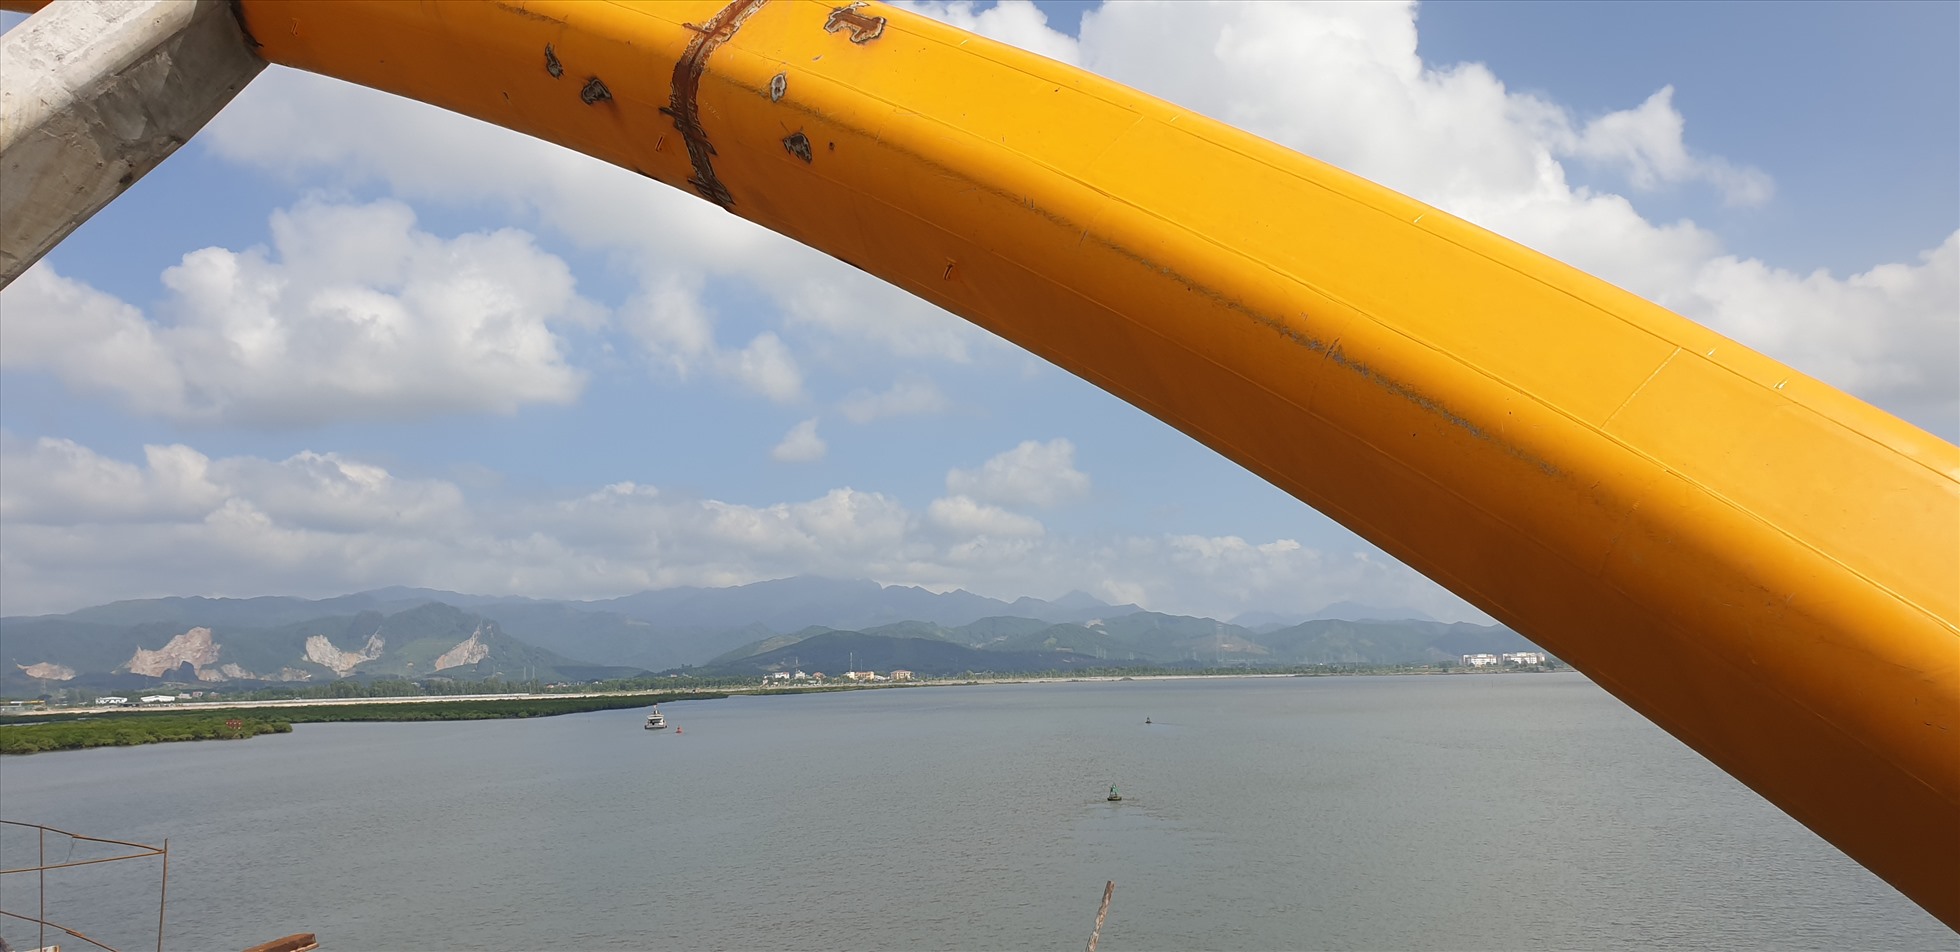 Vịnh Cửa Lục nhìn từ cầu Cửa Lục 3. Ảnh: Nguyễn Hùng